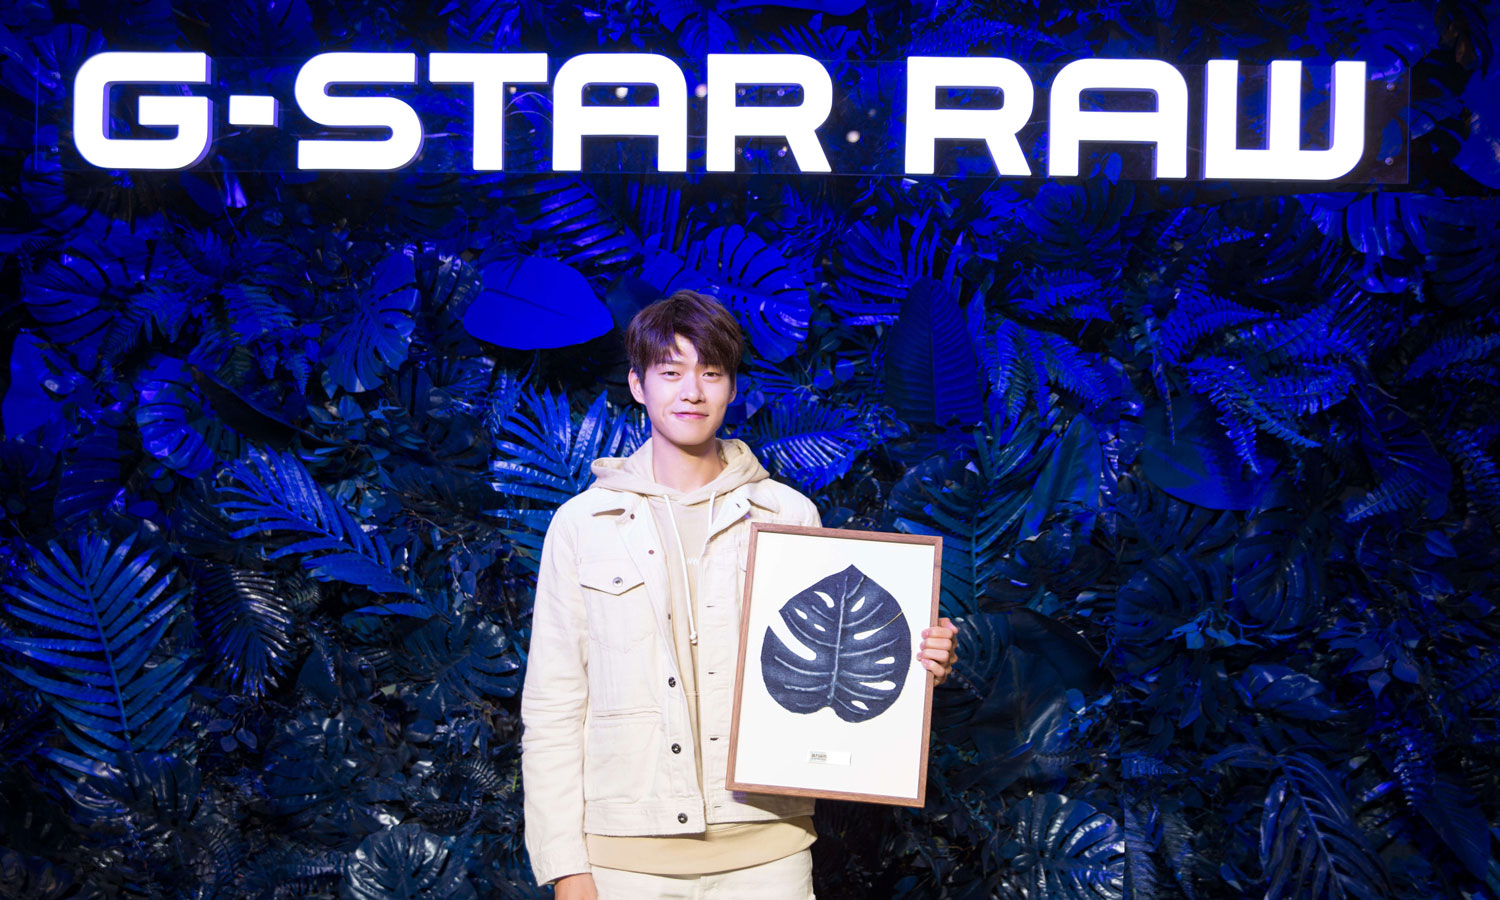 G-STAR RAW 携手魏大勋揭幕 “源力自然” 环保主题艺术展